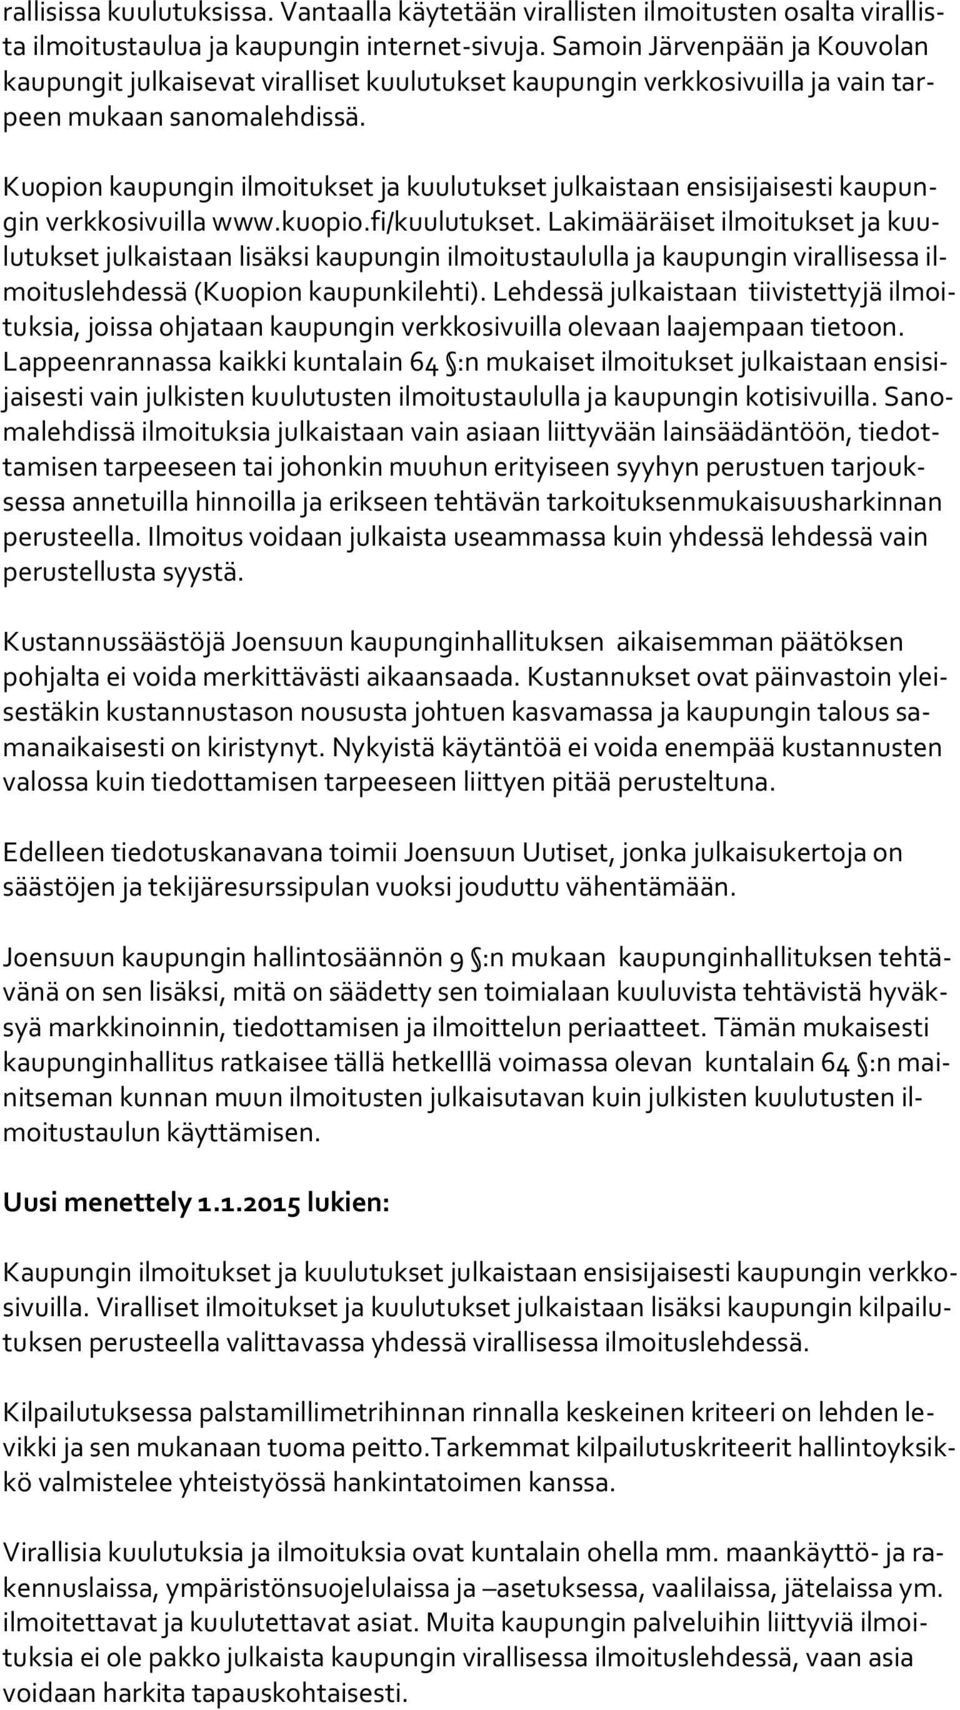 Kuopion kaupungin ilmoitukset ja kuulutukset julkaistaan ensisijaisesti kau pungin verkkosivuilla www.kuopio.fi/kuulutukset.